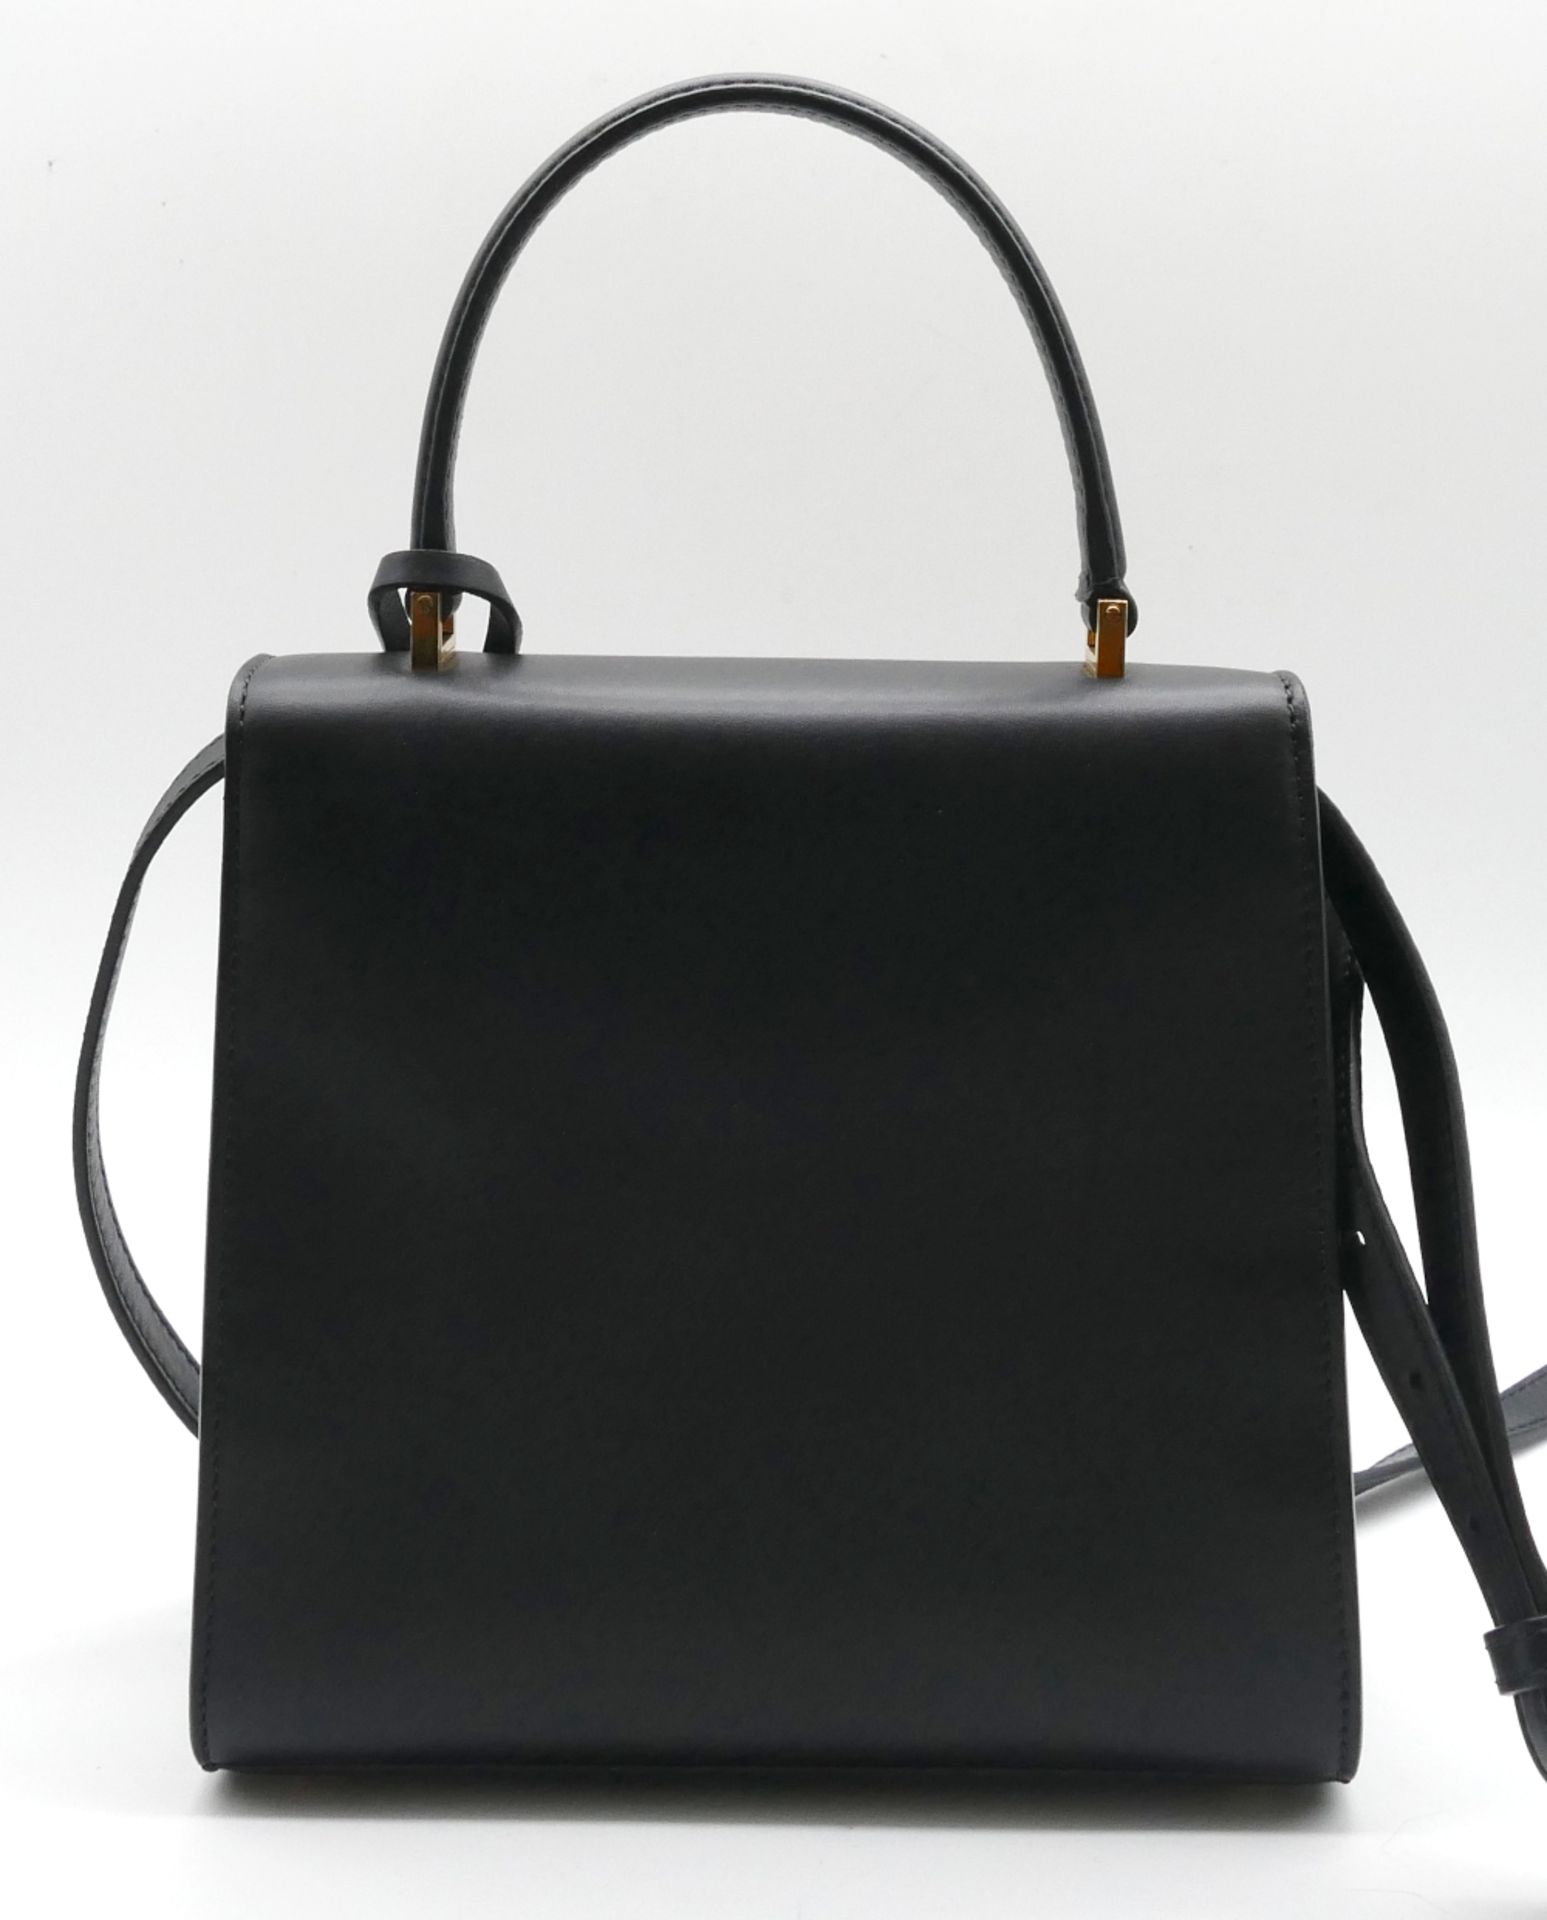 1 Damenhandtasche VERSACE, schwarzes Glattleder, mit Schulterriemen (abnehmbar), mit Schlüssel und S - Bild 2 aus 2